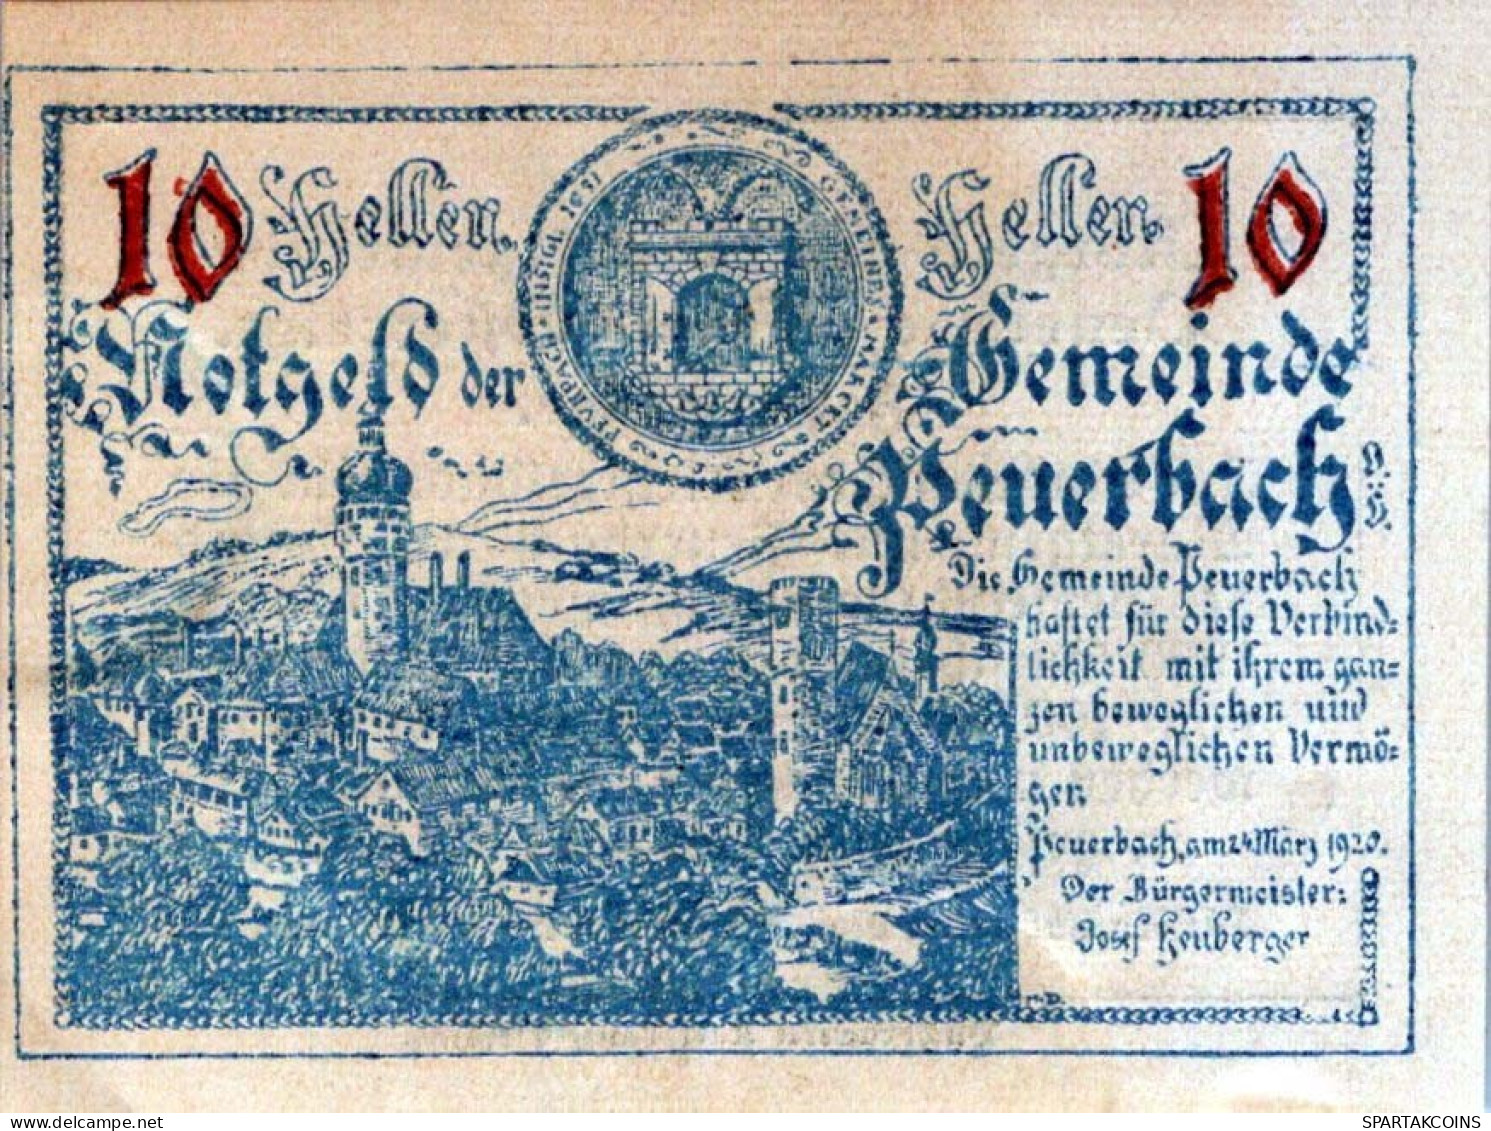 10 HELLER 1920 Stadt PEUERBACH Oberösterreich Österreich Notgeld Banknote #PE292 - [11] Emisiones Locales